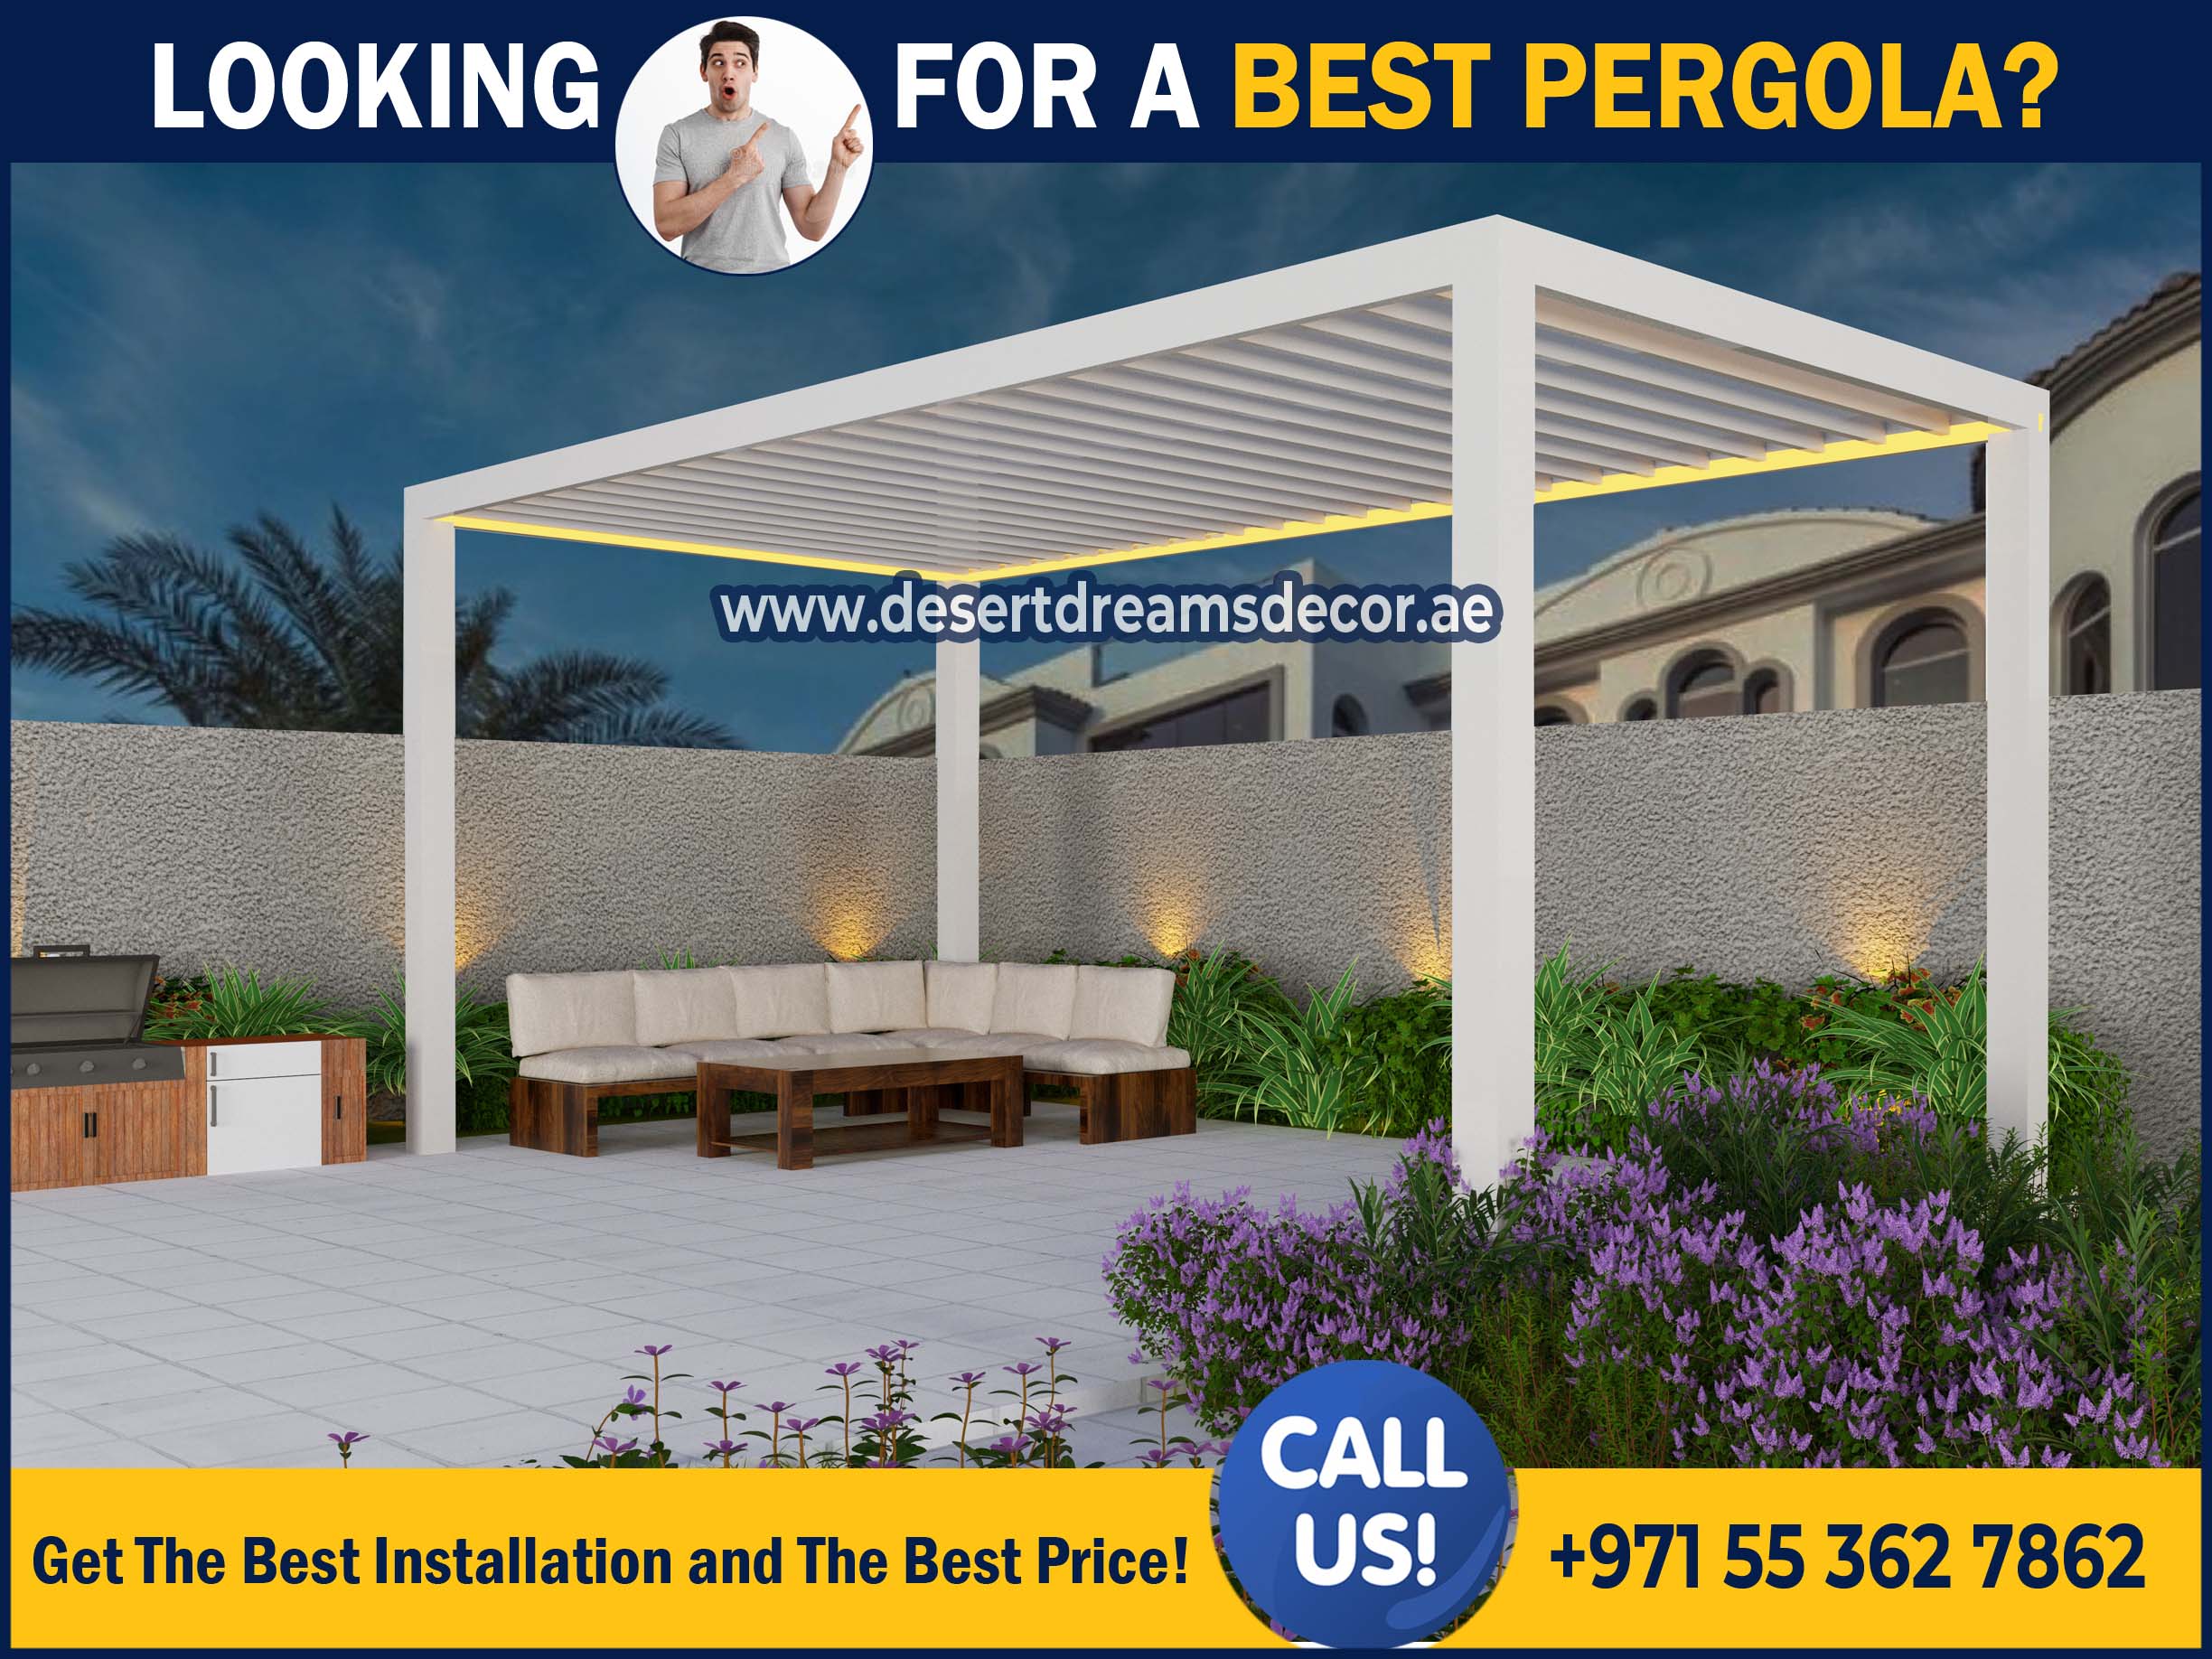 Best Pergola Installation in UAE.jpg